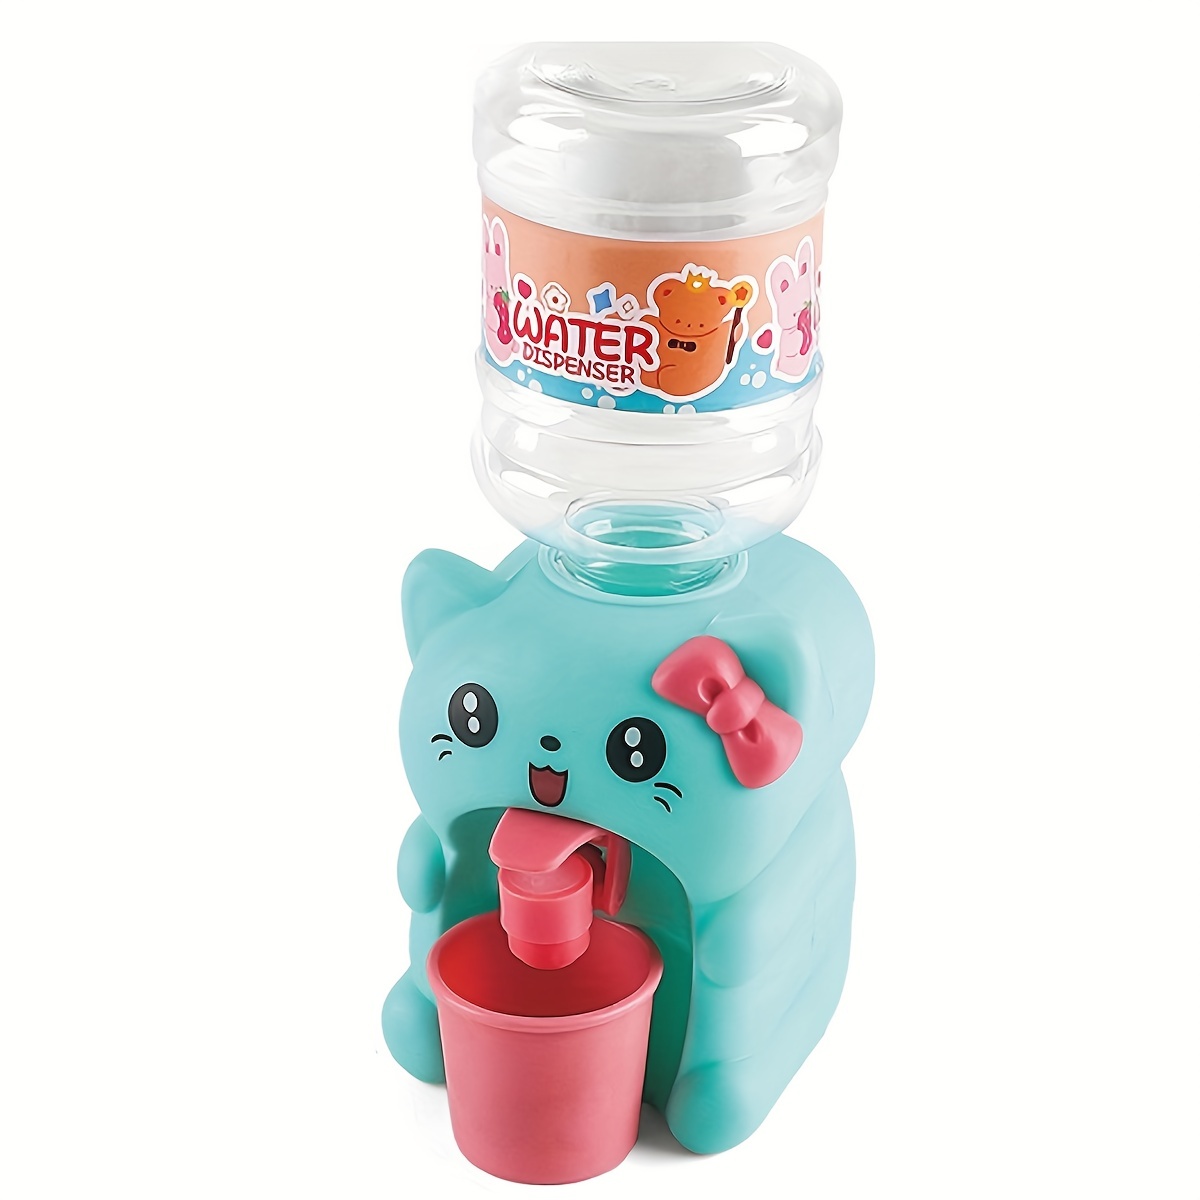 Cute Mini Water Dispenser Toy For Kids Fun Simulation - Temu